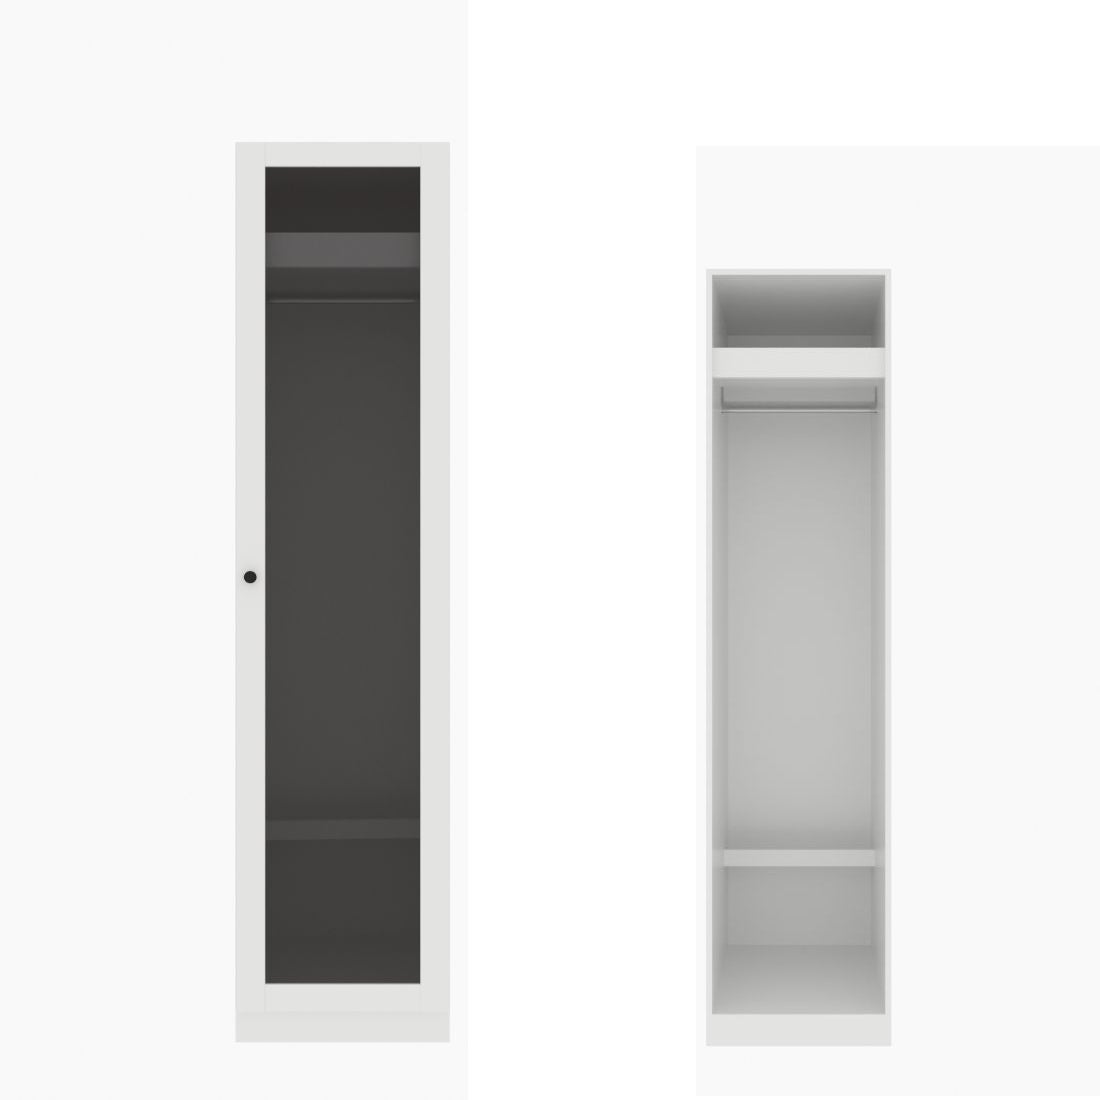 ตู้เสื้อผ้า ราวแขวนโล่ง OP-J (หน้าบานเปิดขวา) ขนาด 50 ซม. รุ่น Blox สีขาว&กระจกชาดำ01